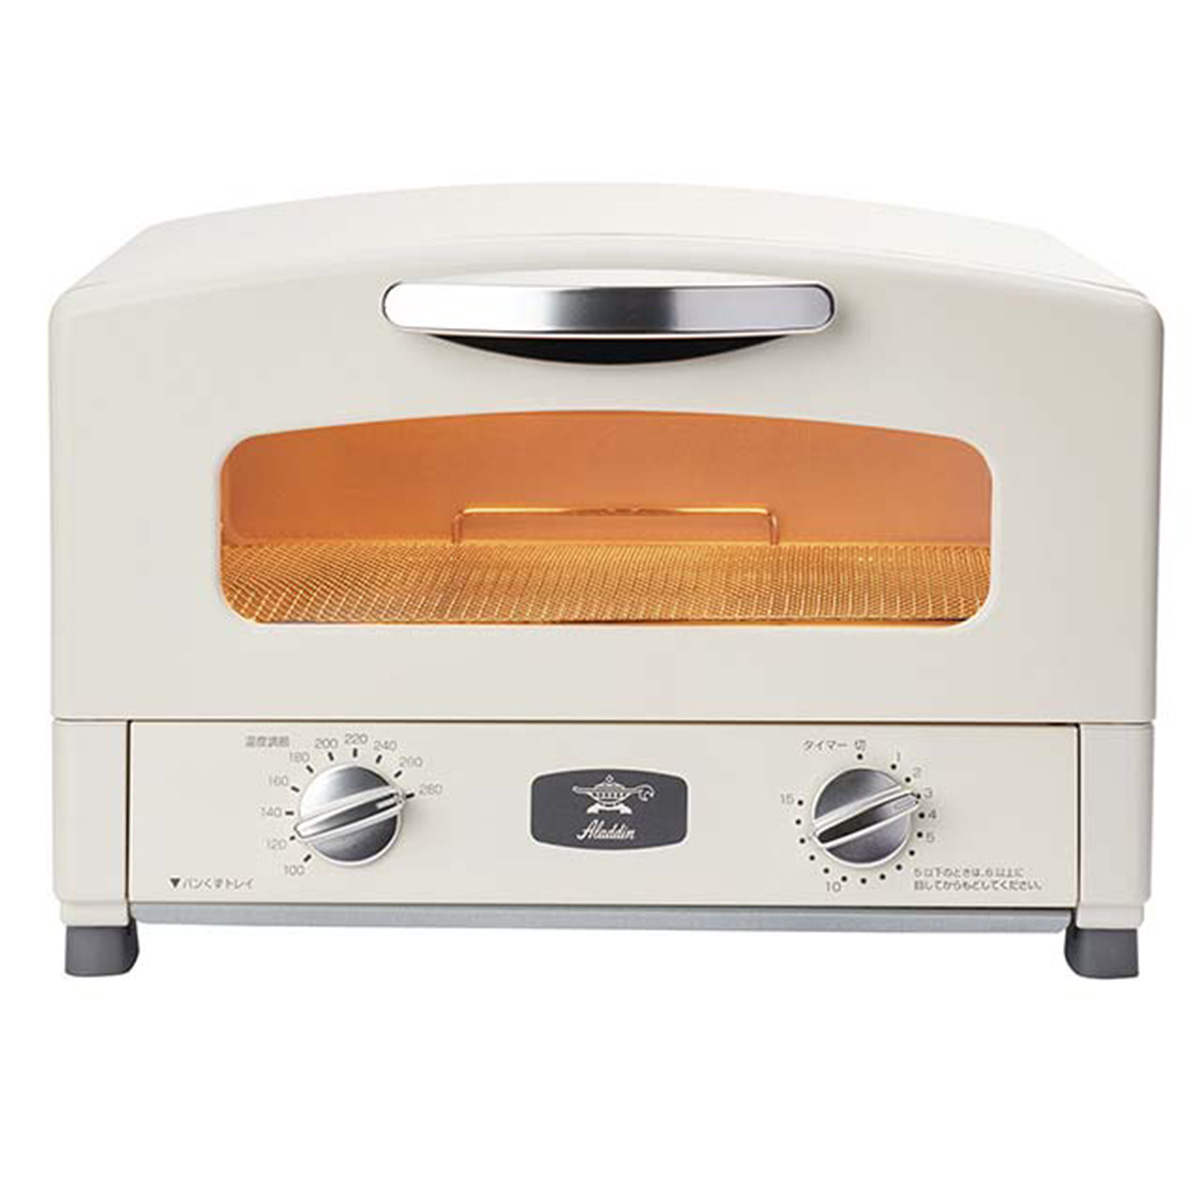 アラジン オーブントースター グラファイトトースター 2枚焼き 遠赤グラファイトヒーター搭載 パン焼き 食パン 山形パン 一人暮らし 新生活 おしゃれ ホワイト